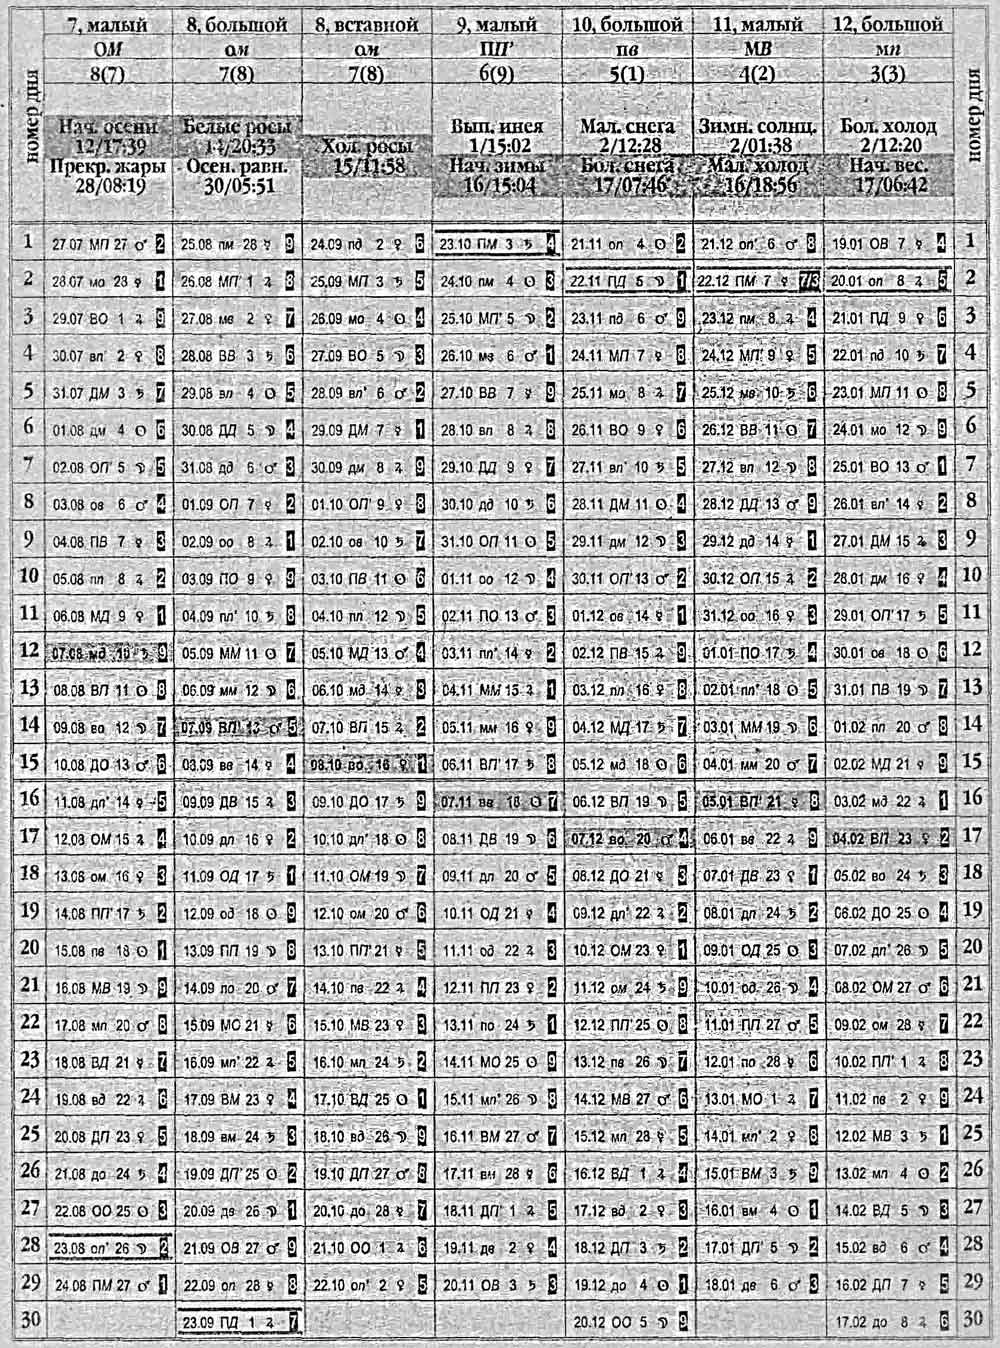 Китайский календарь 1976 года